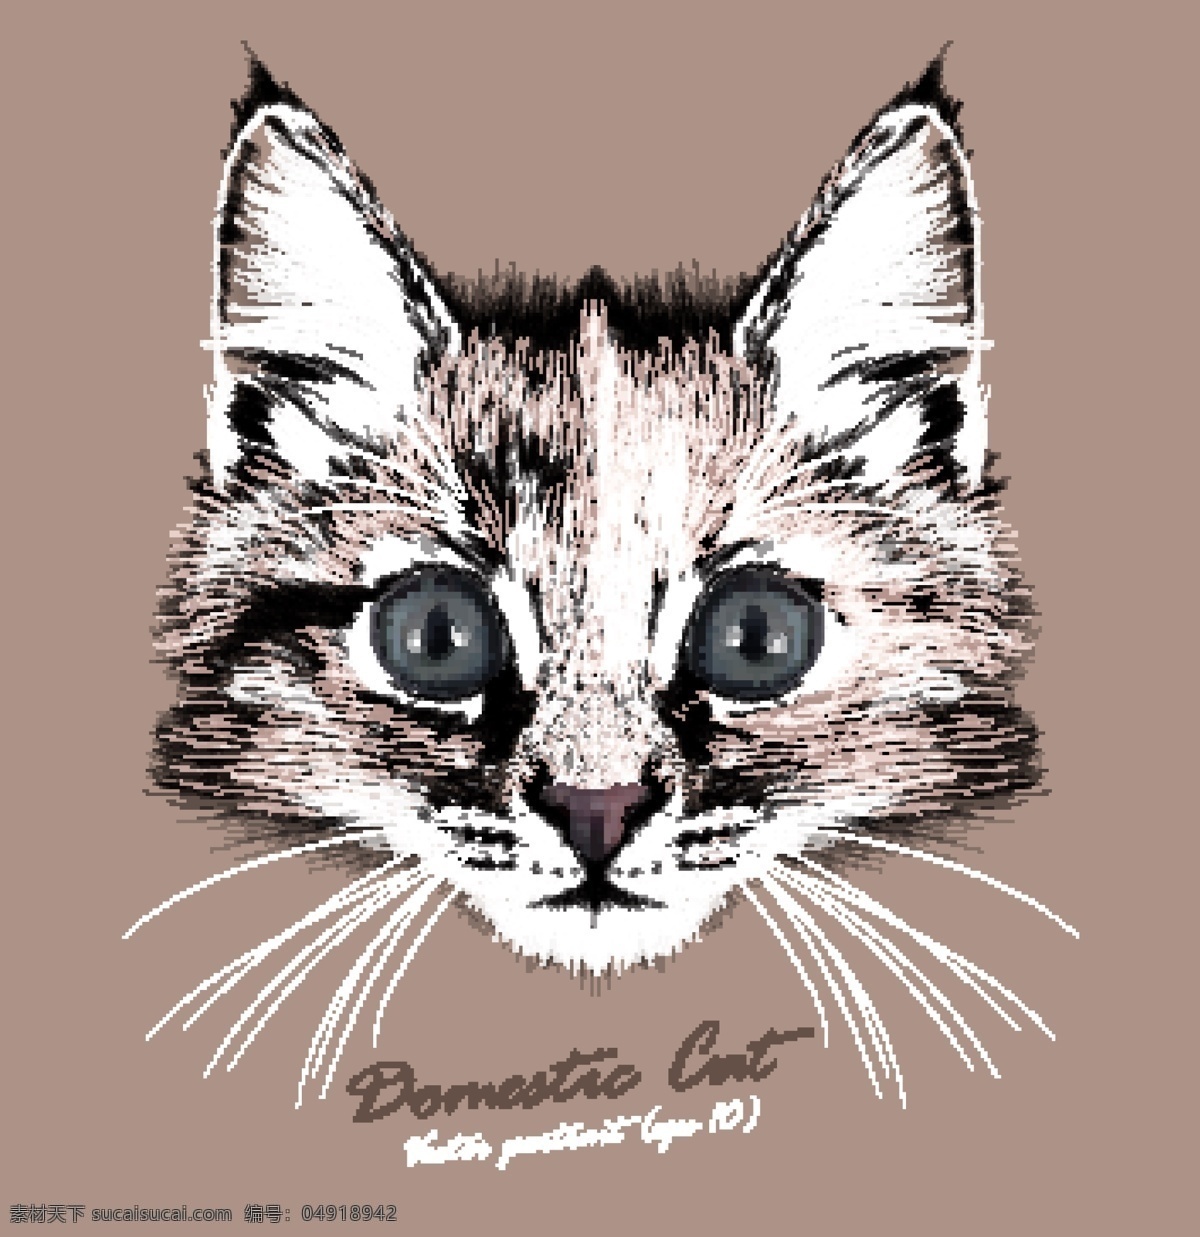 可爱 猫咪 宠物 猫 头像 品种 矢量 狐狸 名猫 动物 猫奴 毛绒绒 猫科动物 卡通 水彩 手绘 插画